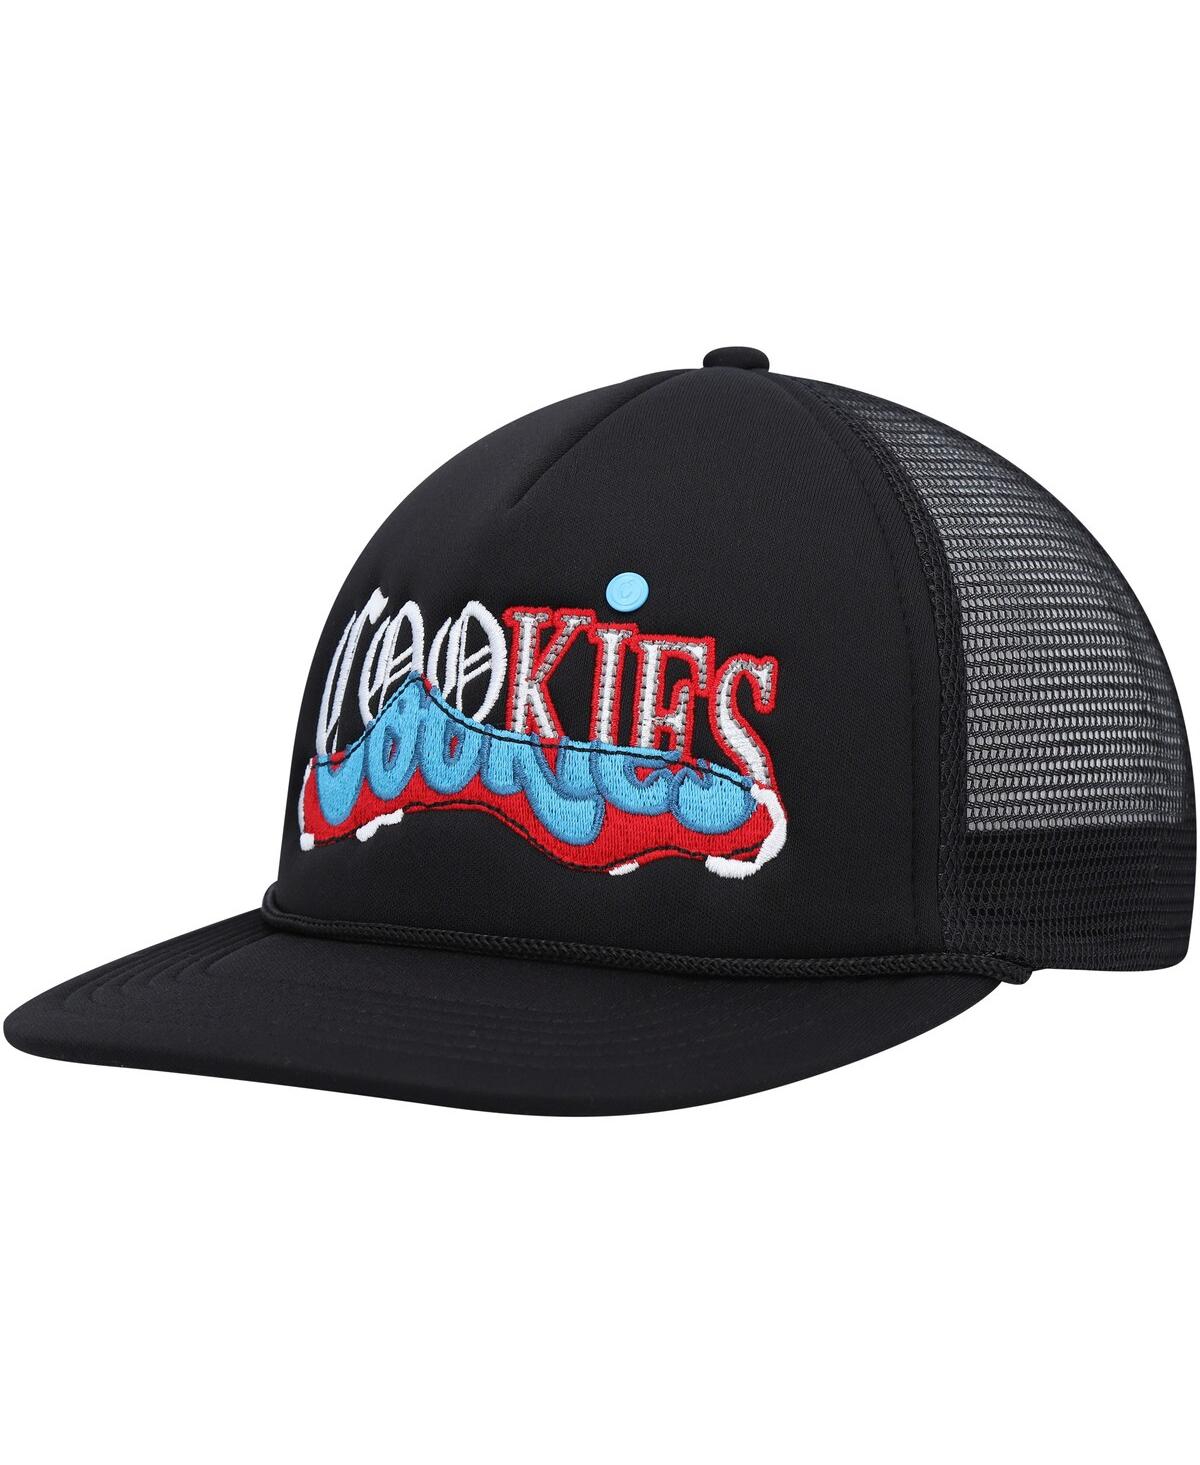 Men's Cookies Black Upper Echelon Trucker Snapback Hat - Black